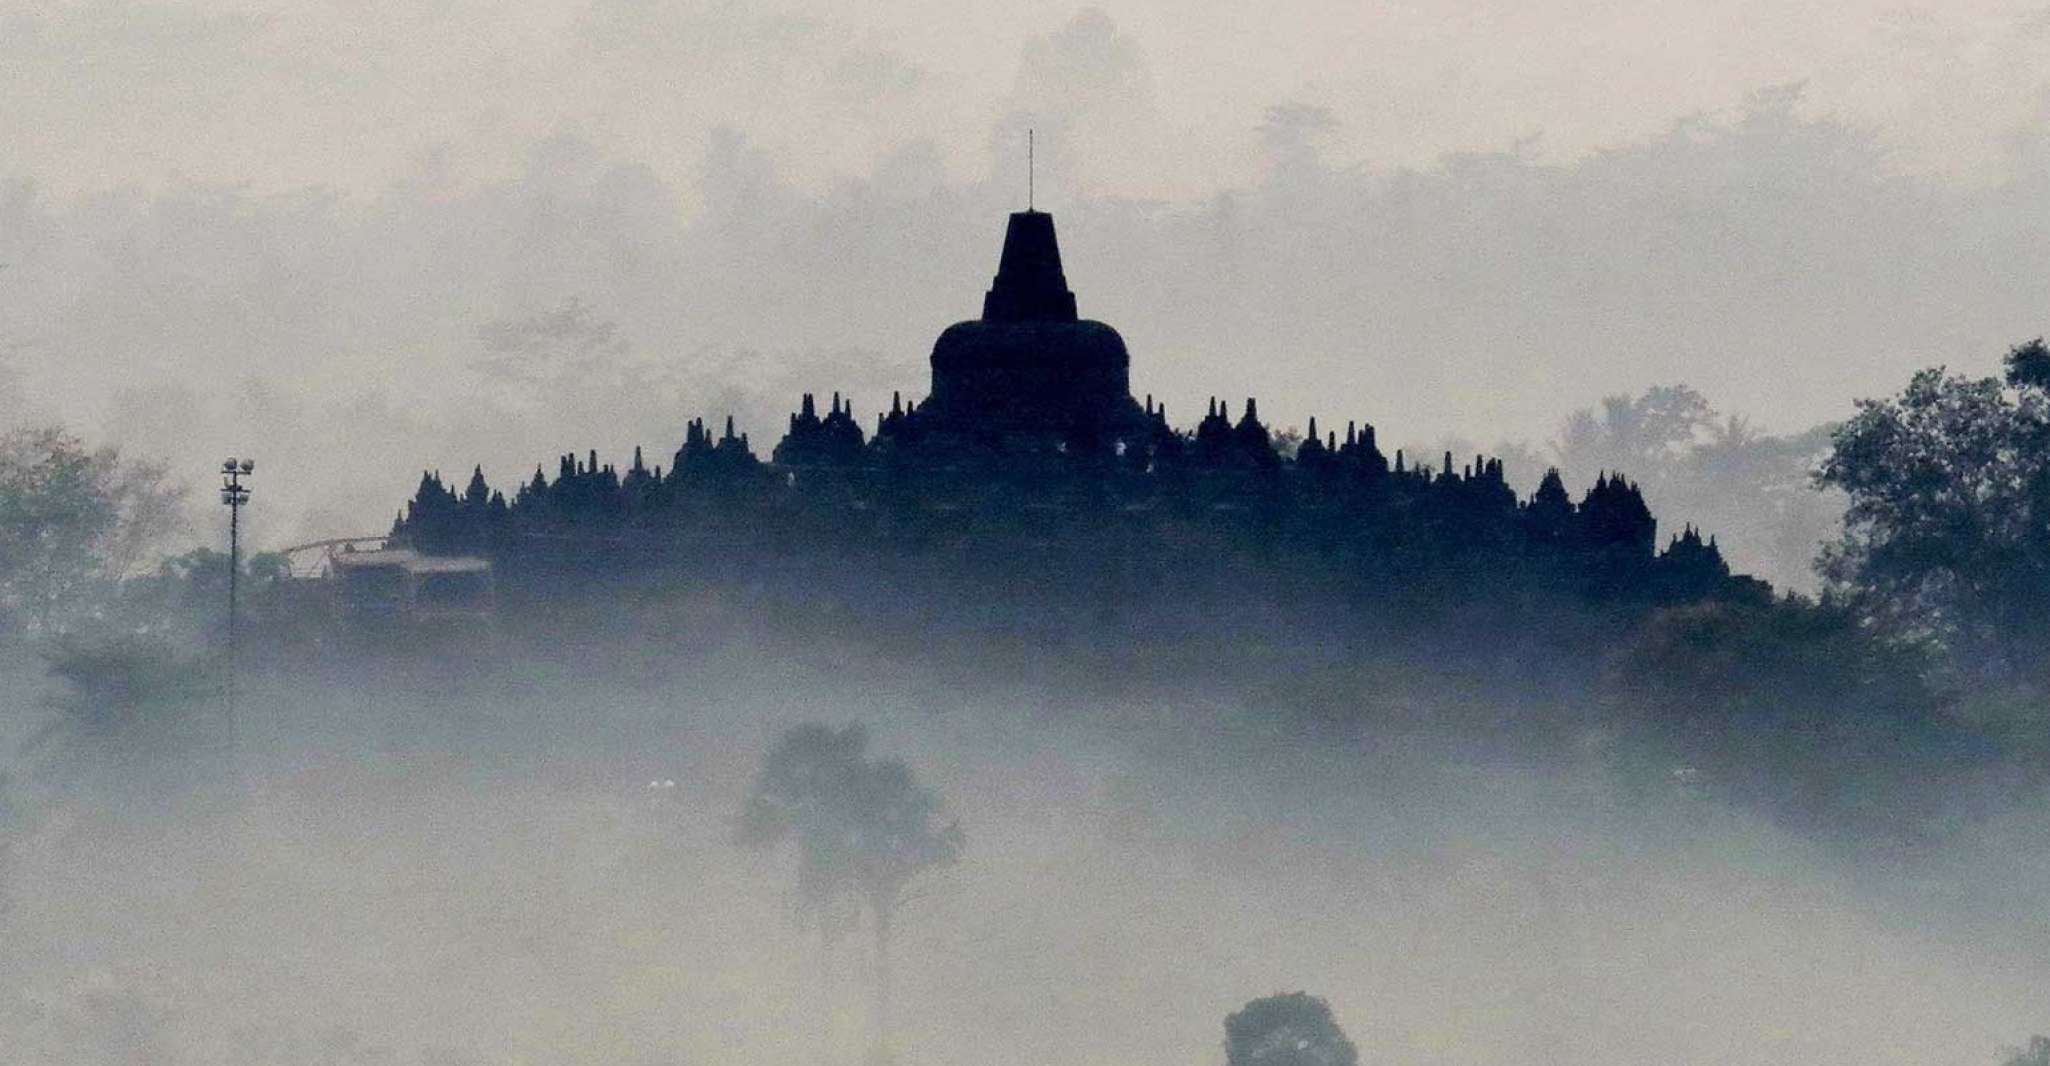 From Yogyakarta, Borobudur Sunrise Half Day Tour with Pickup - Housity